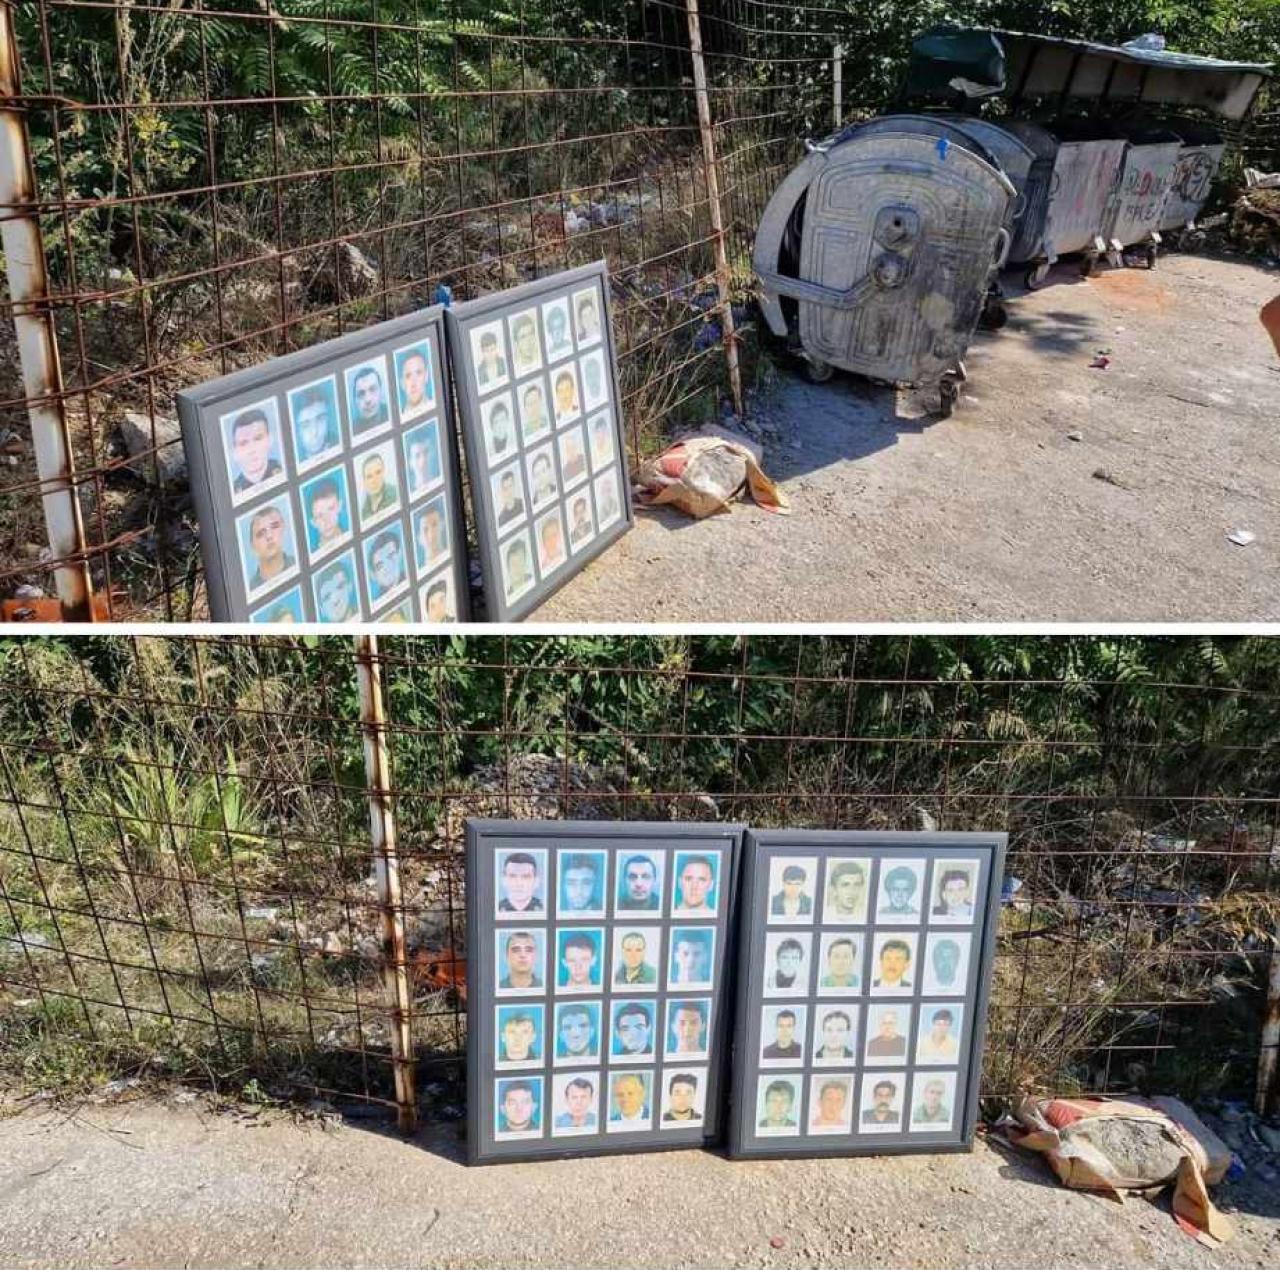 Fotografije branitelja bačene na smeće - Mostar: Slike poginulih branitelja bačene na smeće